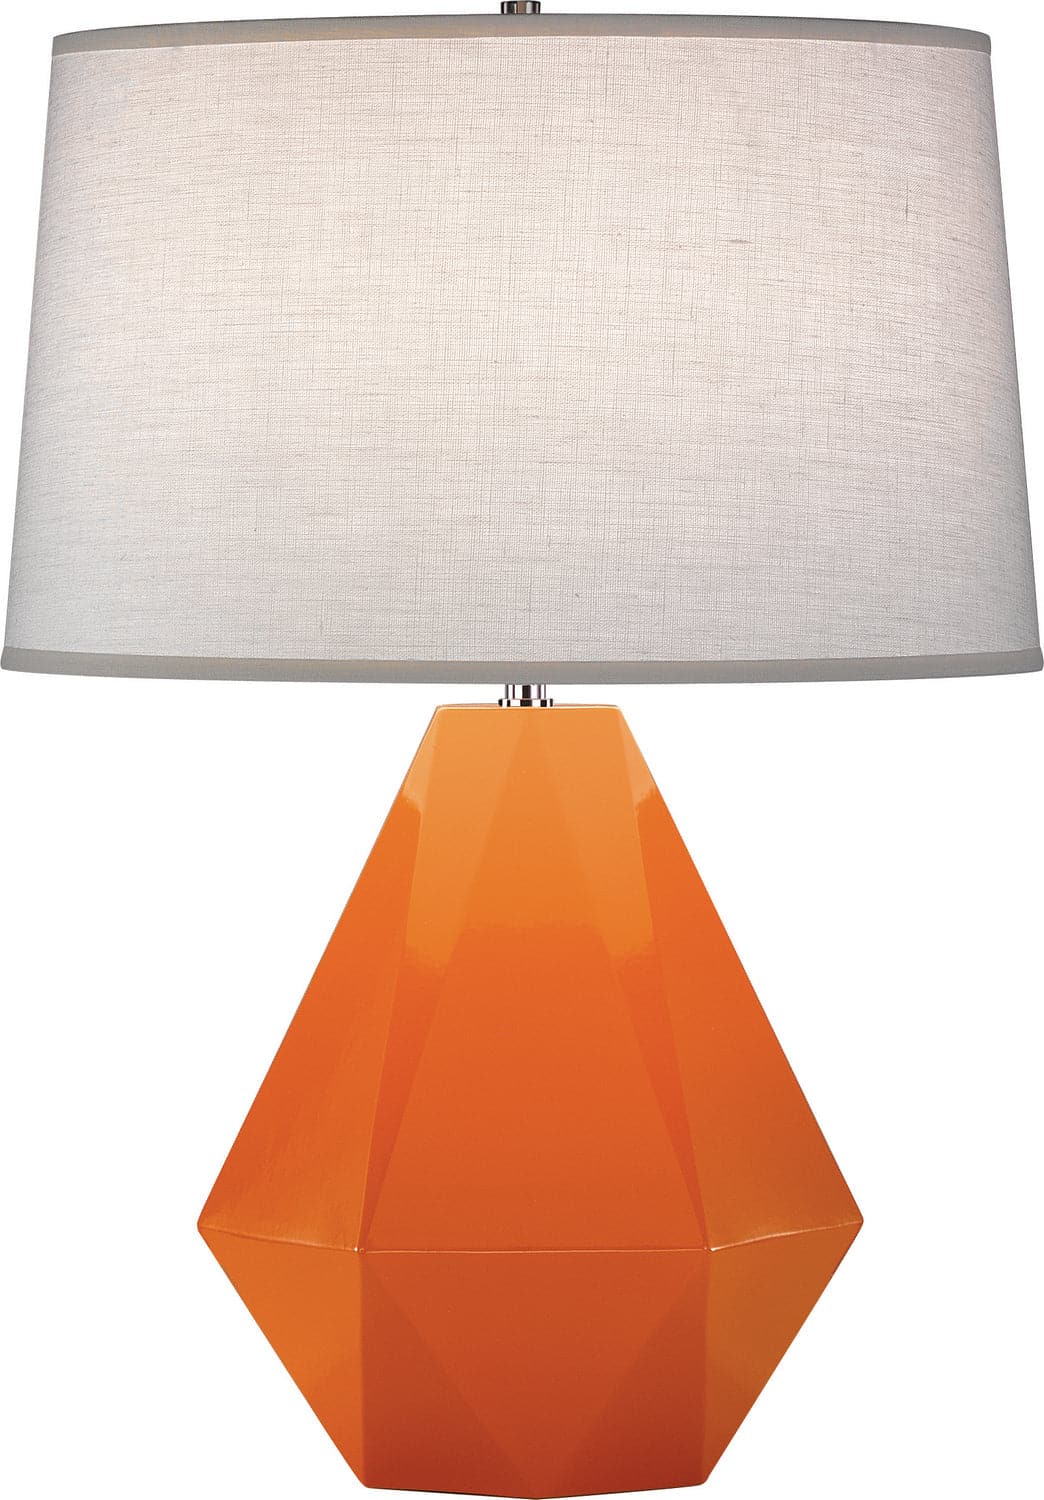 Robert Abbey - 933 - One Light Table Lamp - Delta - Pumpkin Glazed w/Polished Nickel